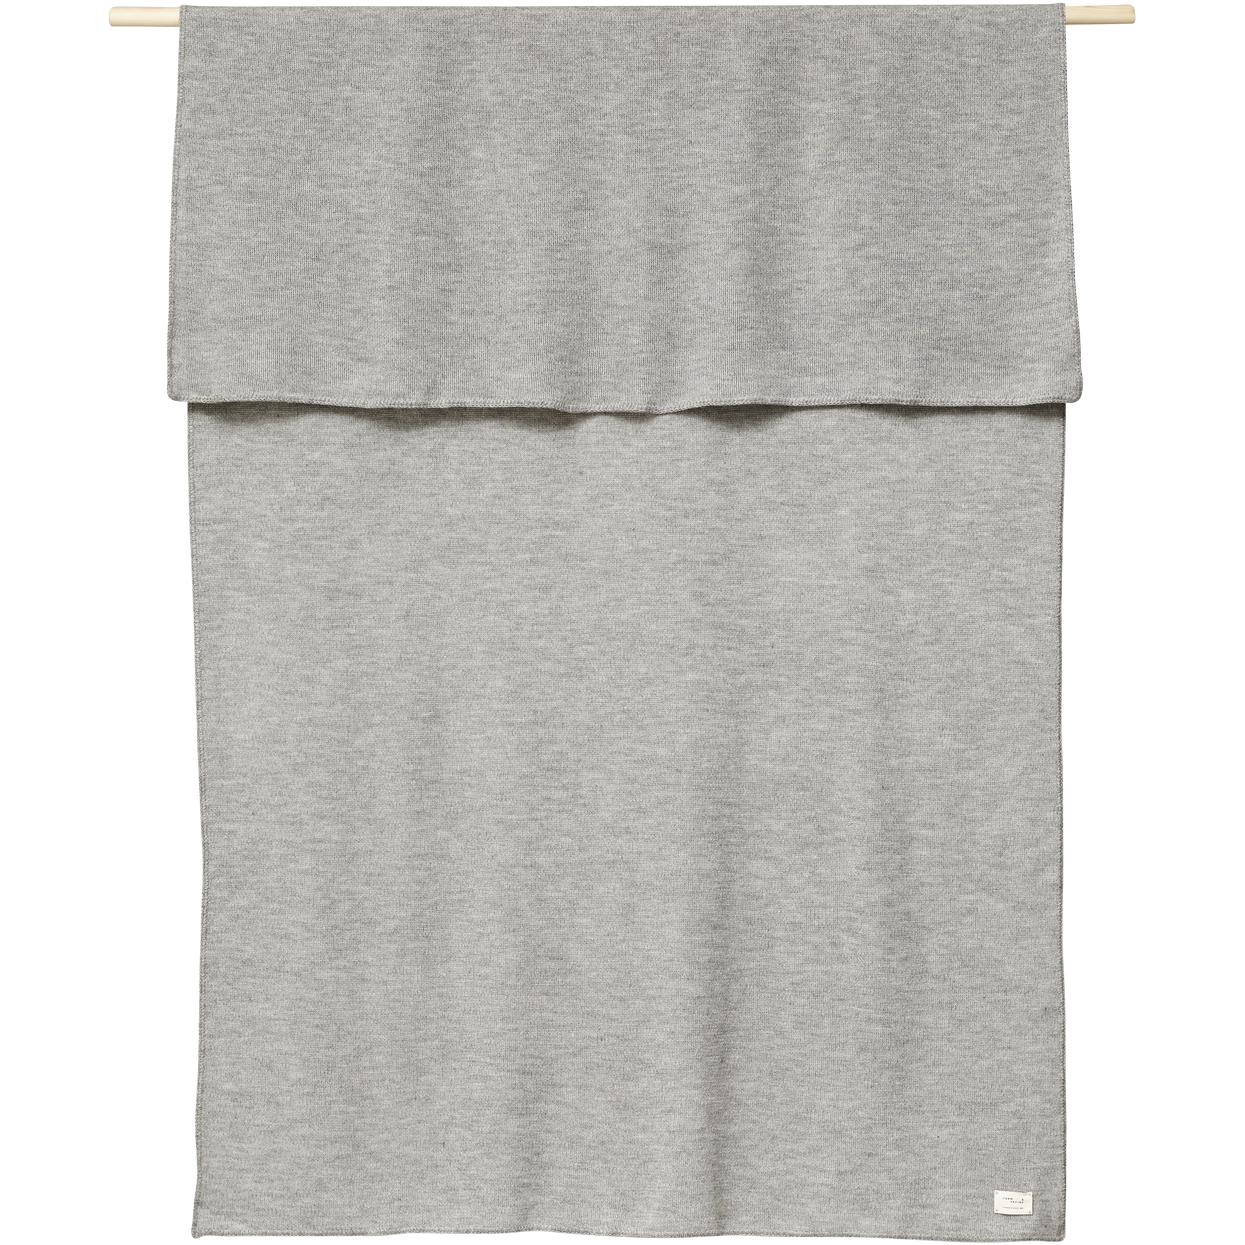 Form&Refine Aymara Plaid Grey, 130x190 cm